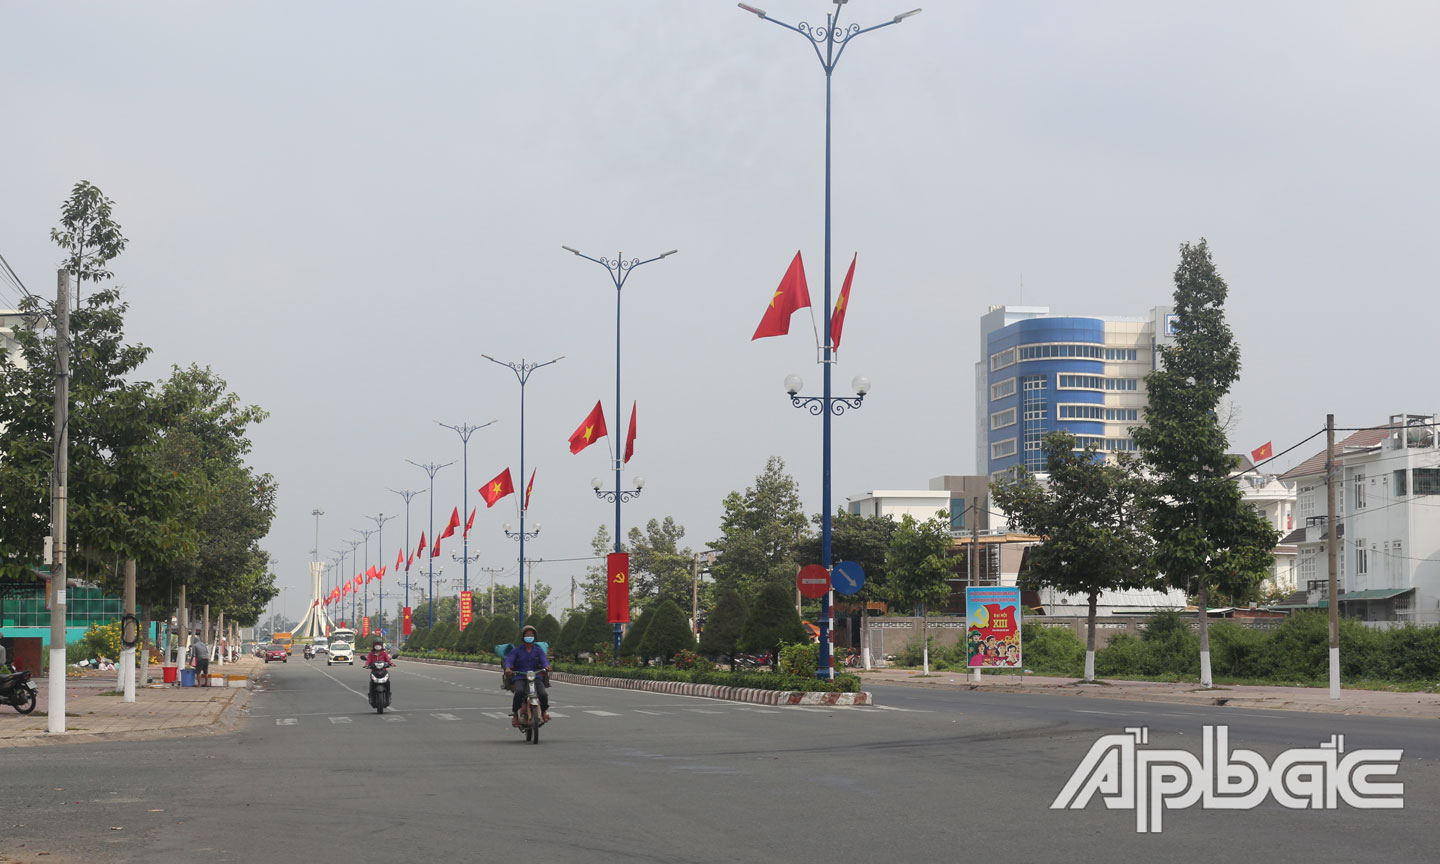 Đường Hùng Vương nối dài ngập tràn sắc cờ.